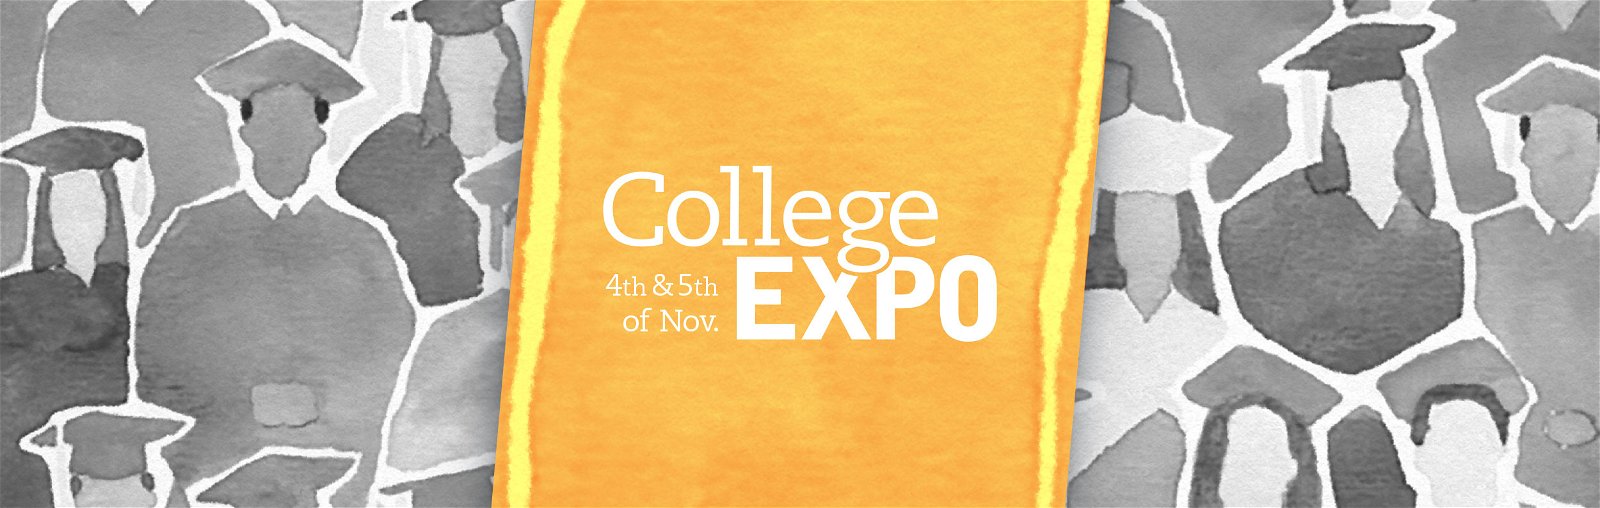 College Expo